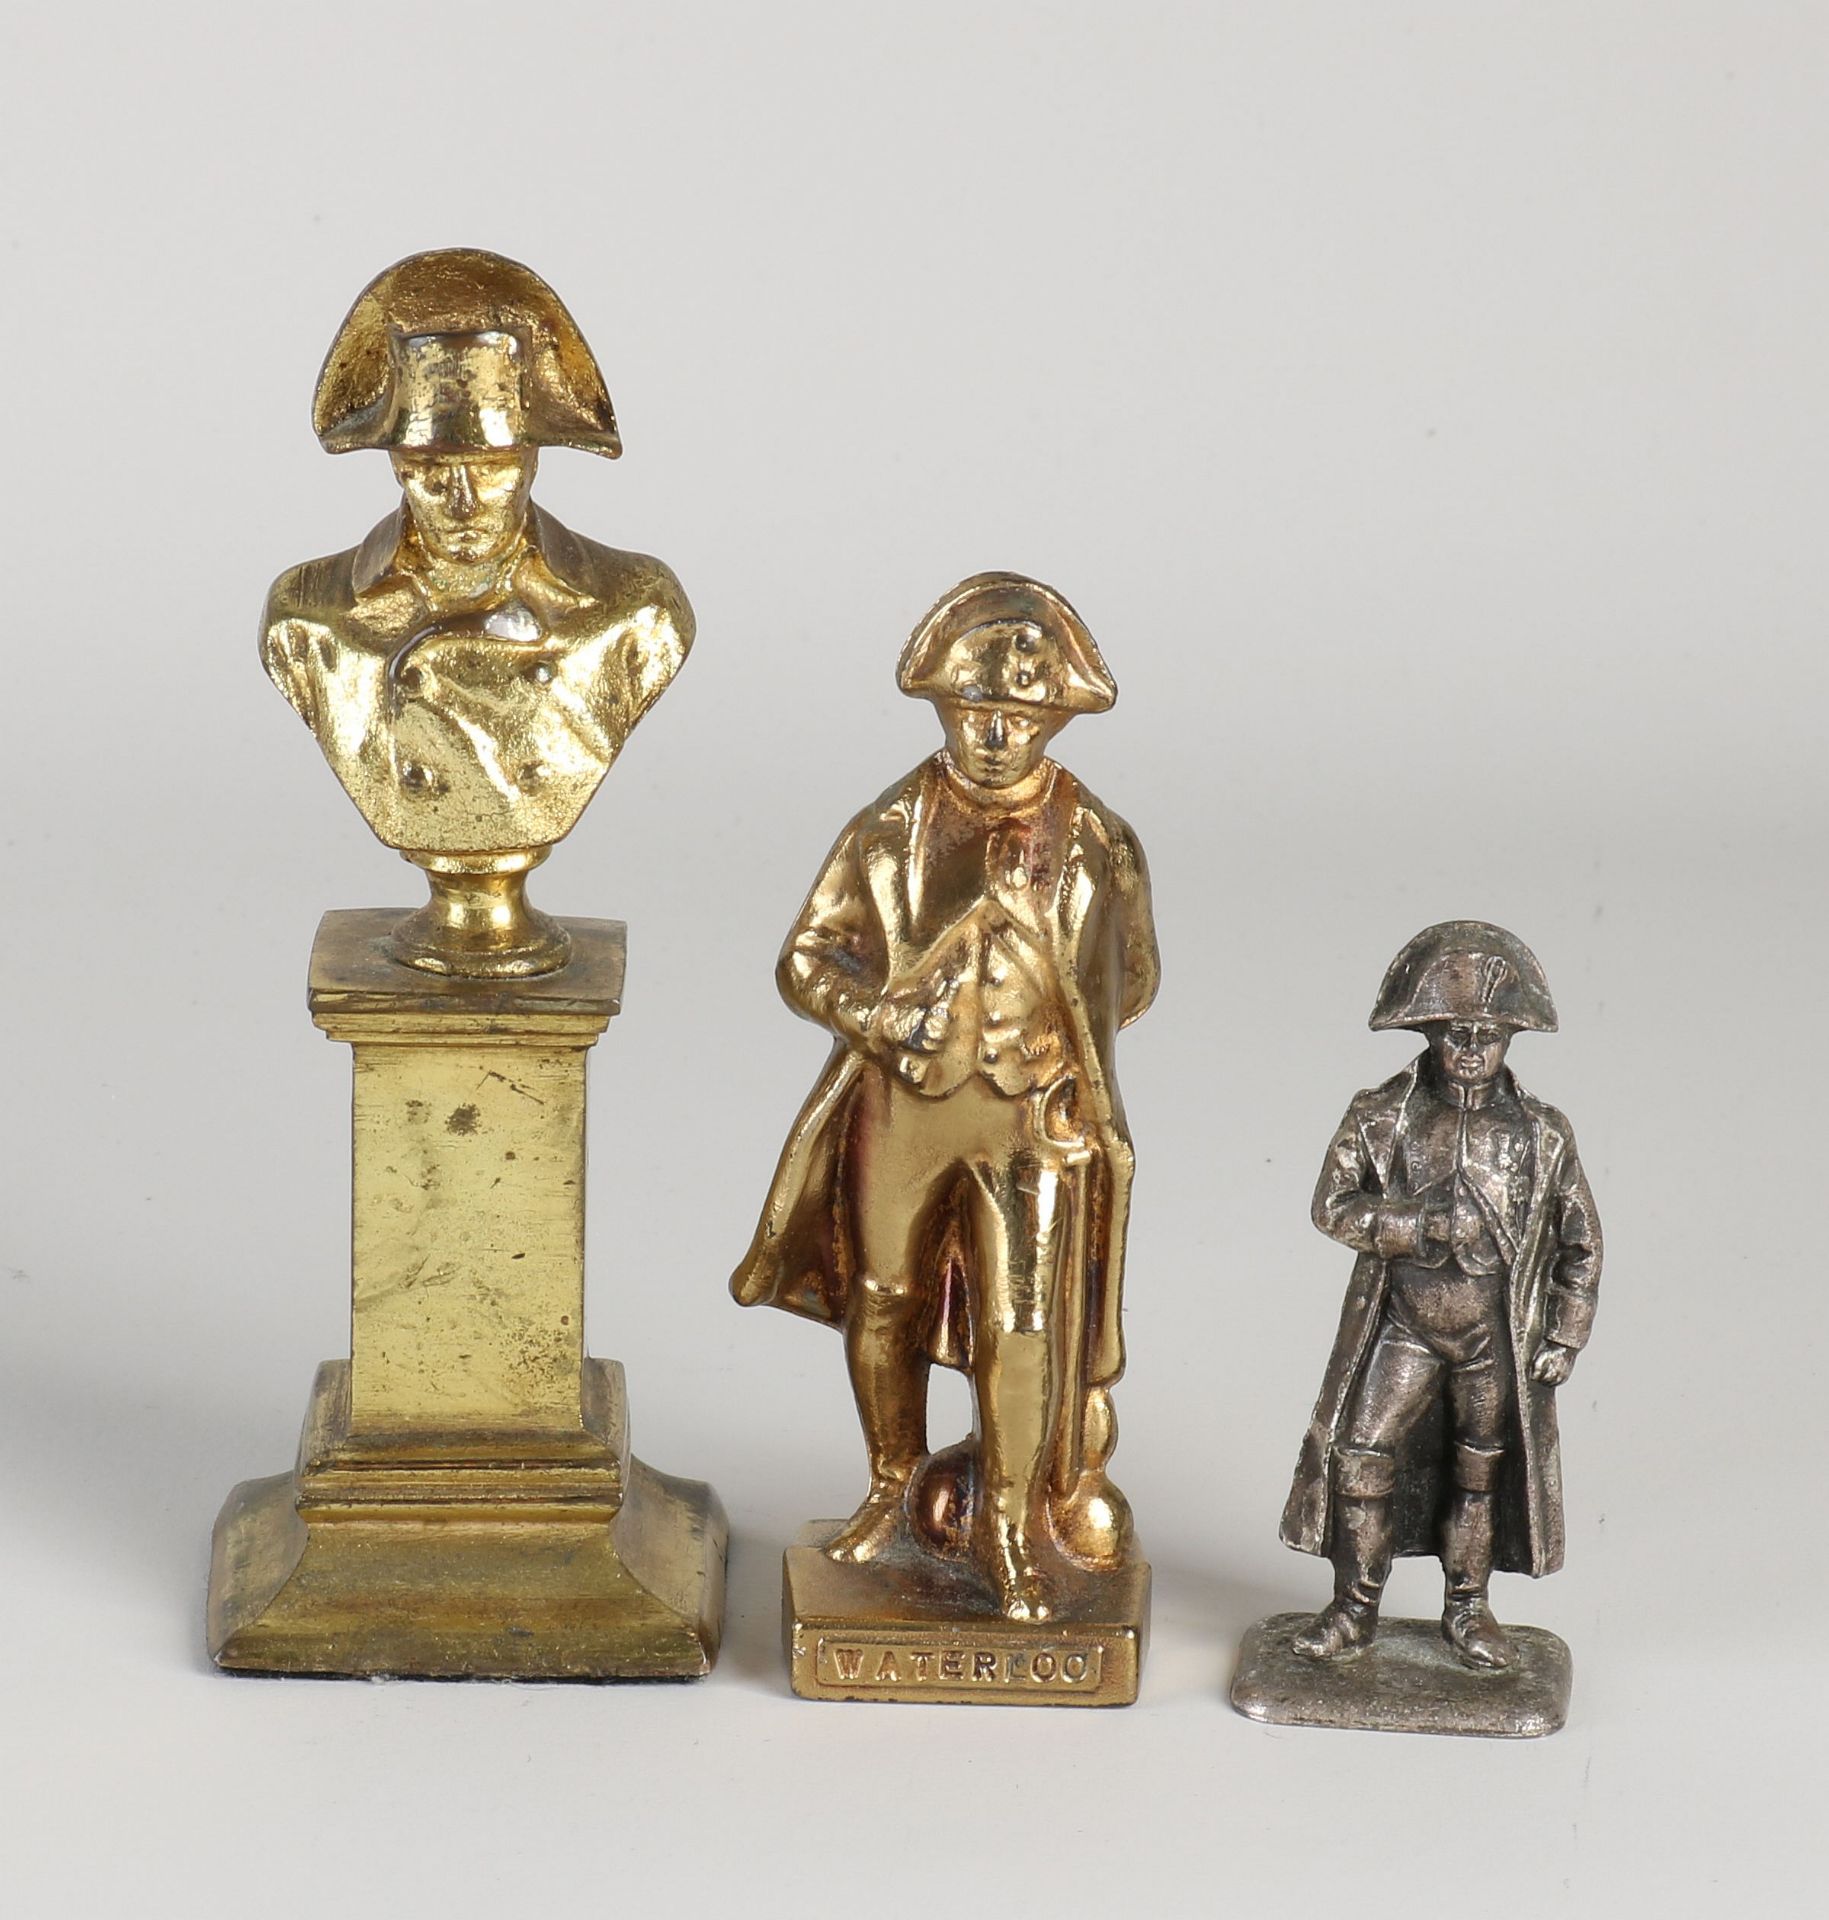 Three Napoleon figures